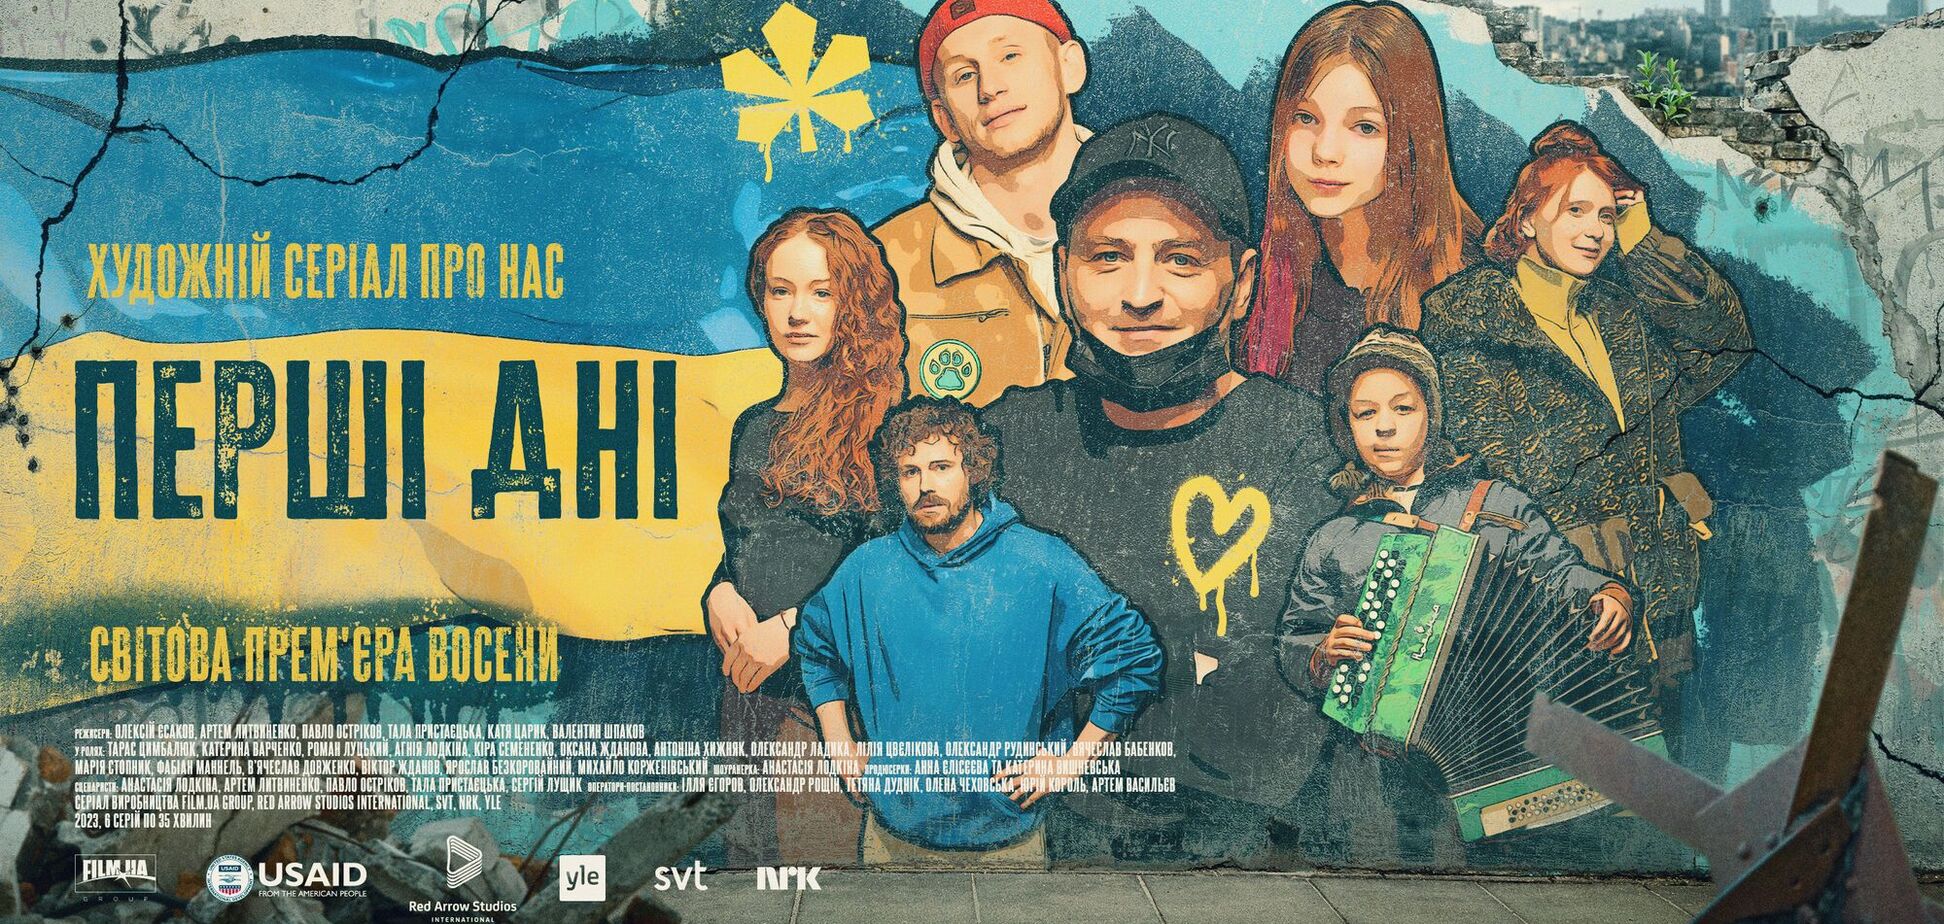 Украинский сериал впервые пригласят на Netflix: трейлер 'Первые дни'